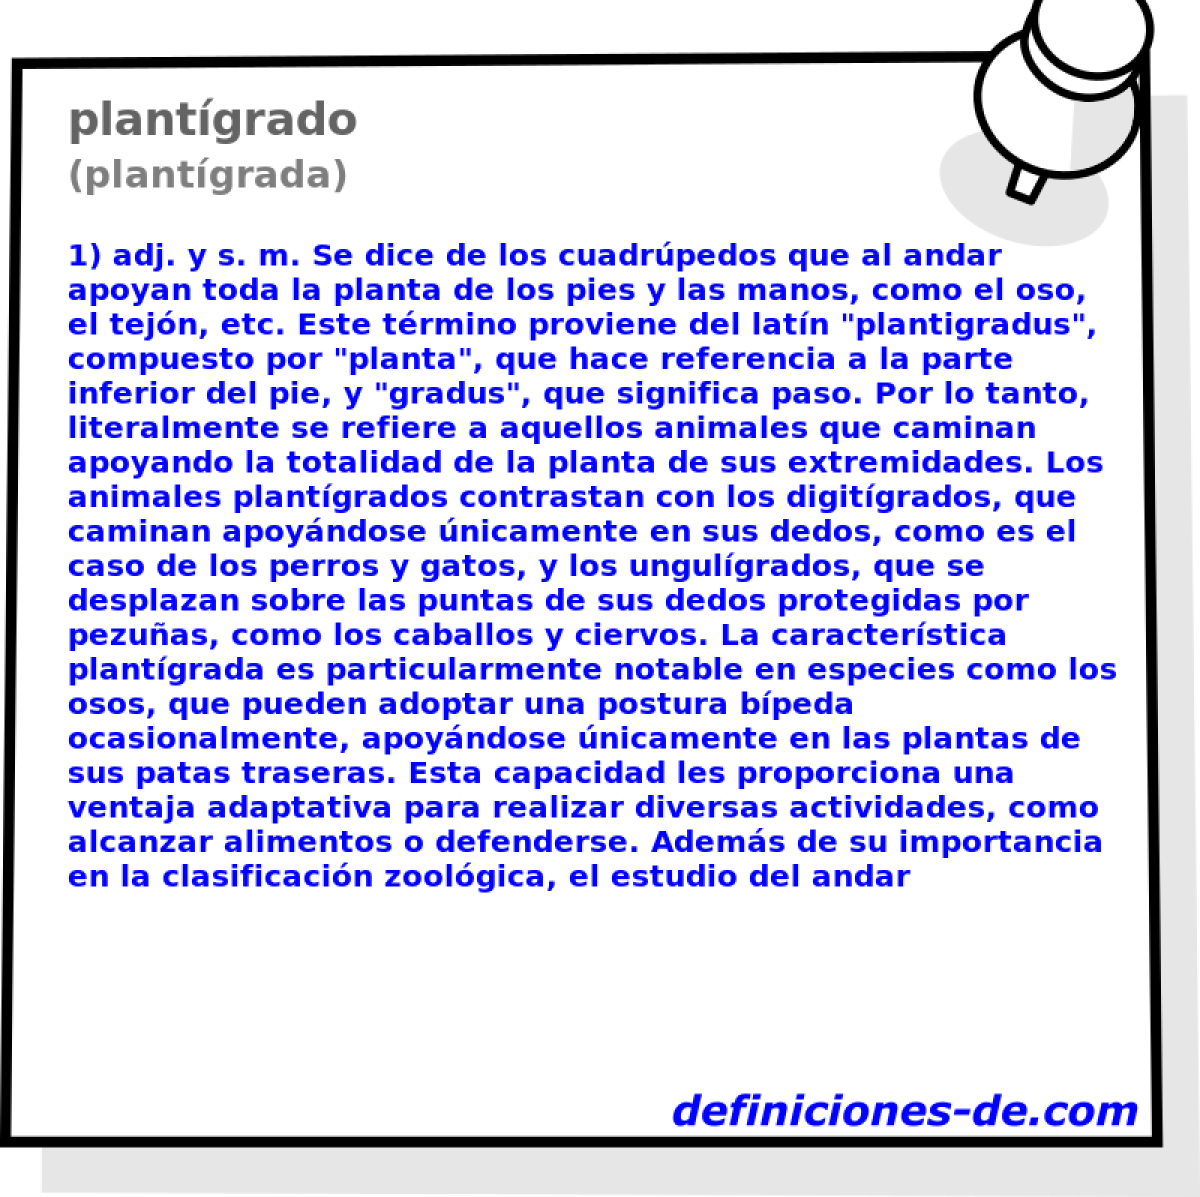 plantgrado (plantgrada)